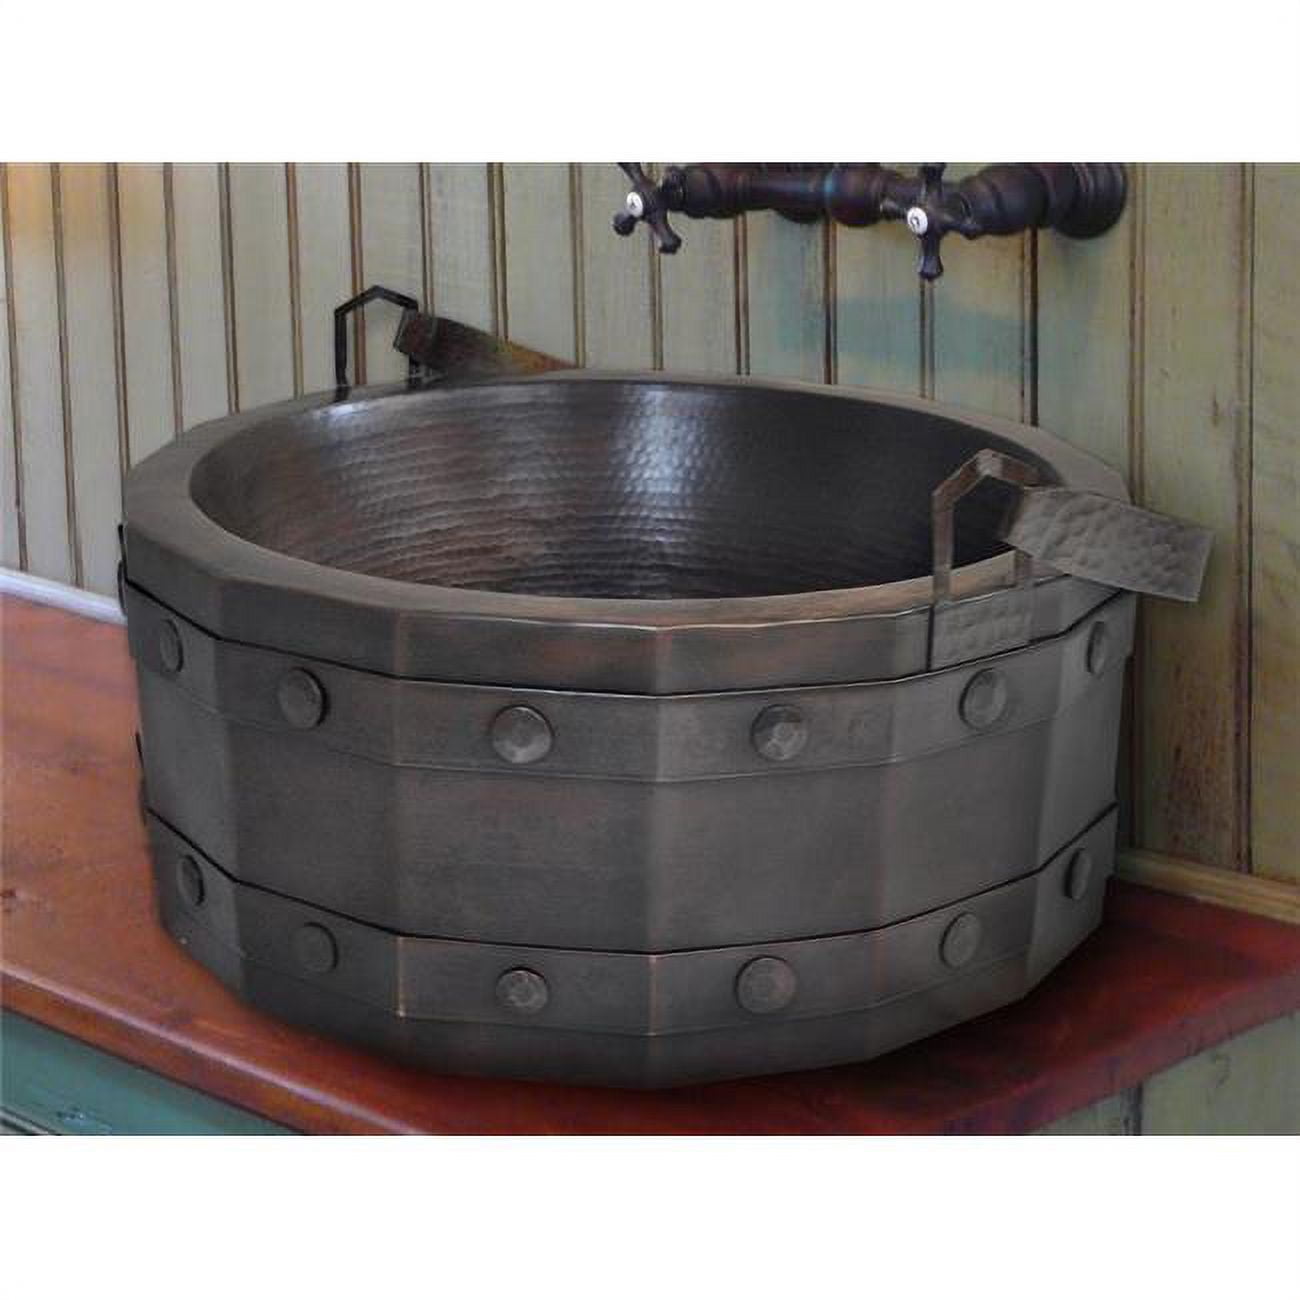 Crvs-bk-17-db Copper Round Vessel Sink, Dark Brown - Bucket Design - 7 X 17 X 17 In.